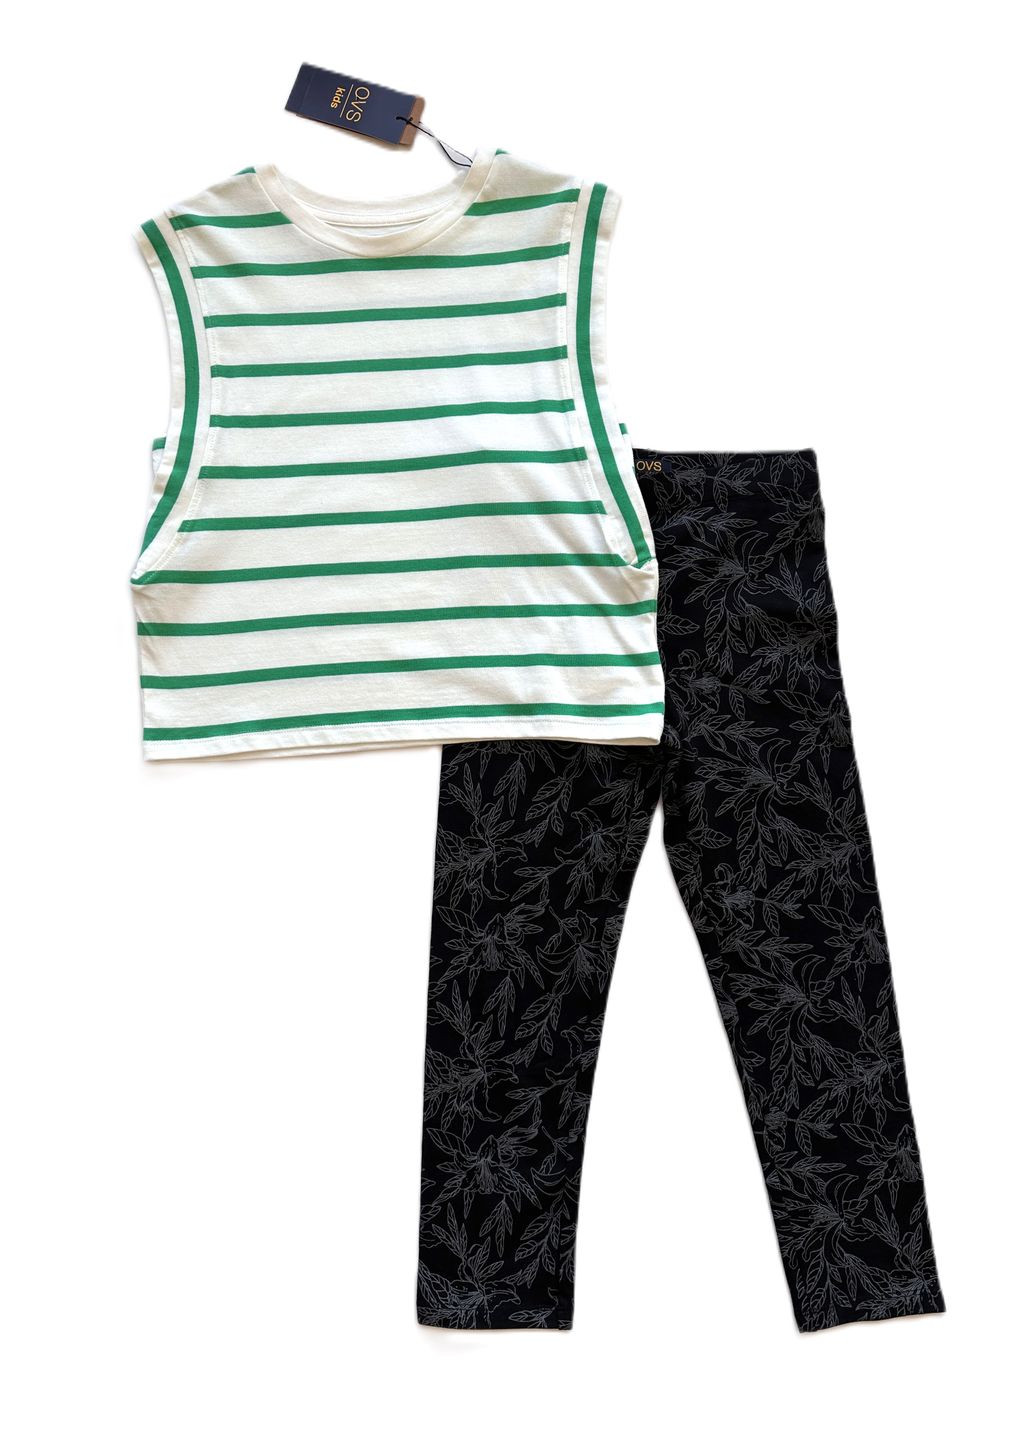 Зеленый летний комплект для девочки футболка полосатая бело-зеленая 2000-55 + леггинсы черные трикотажные 2000-62 (146 см) OVS